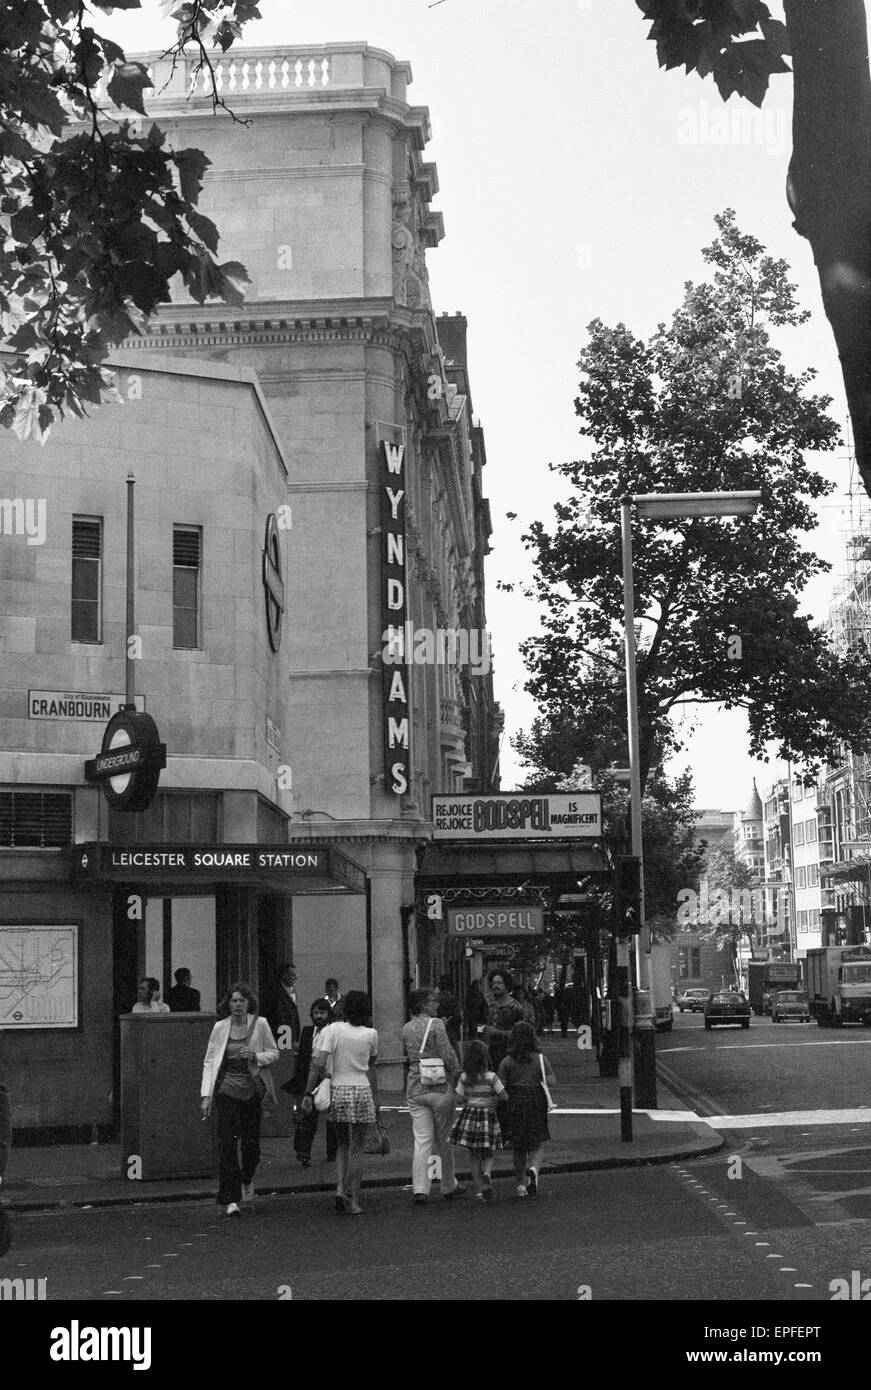 Vue extérieure de l'Wyndham's Theatre adjacent à la station de métro Leicester Square sur Charing Cross Road, à Londres. Circa 1971. Banque D'Images